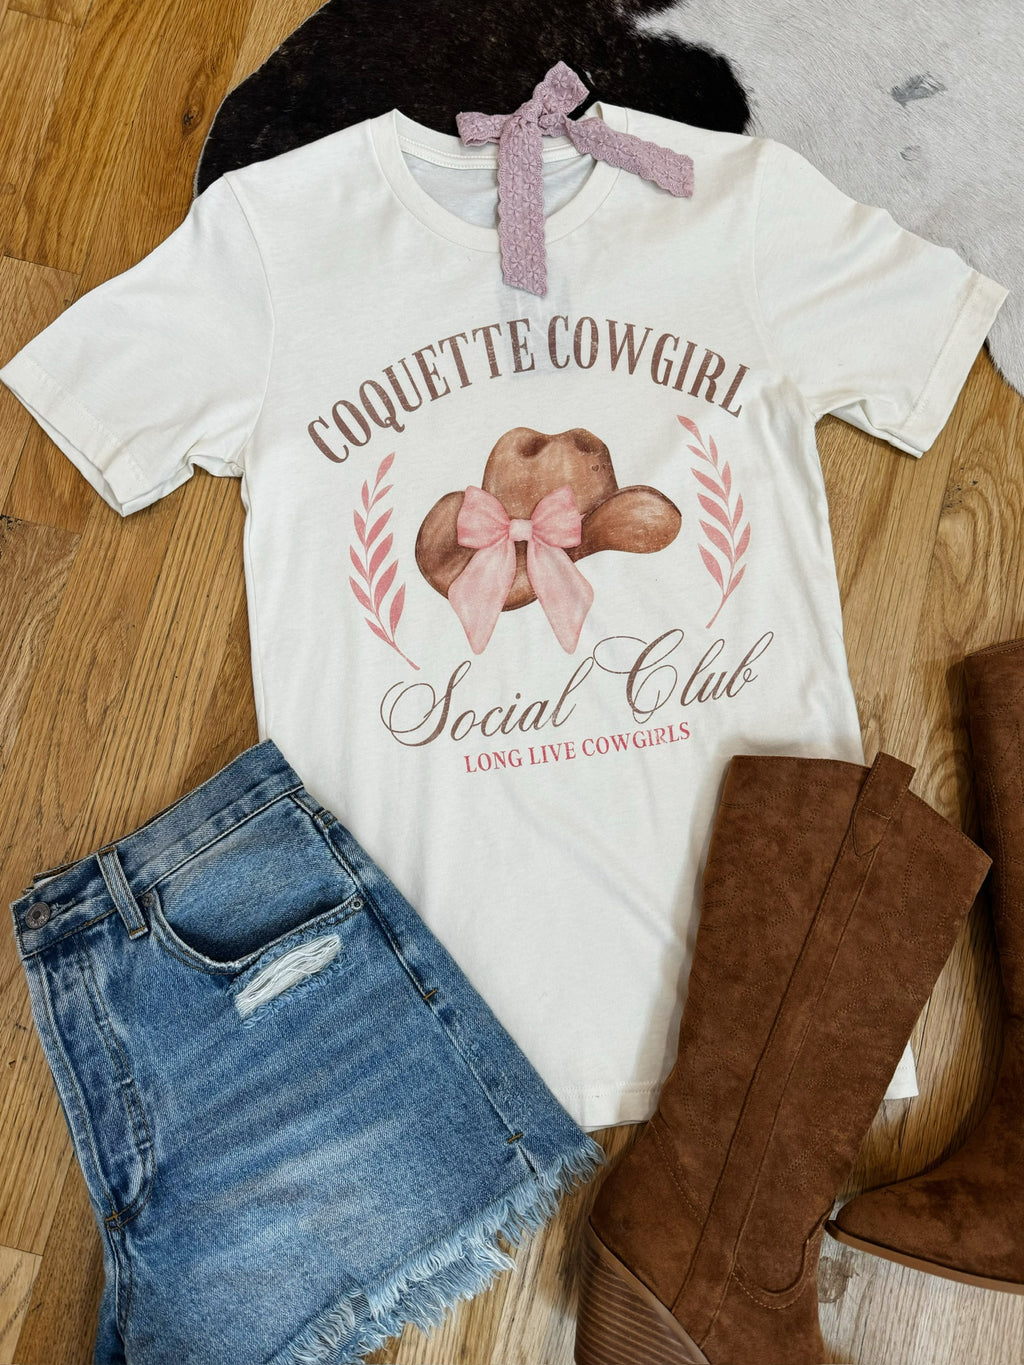 Coquette Cowgirl Social Club Tee